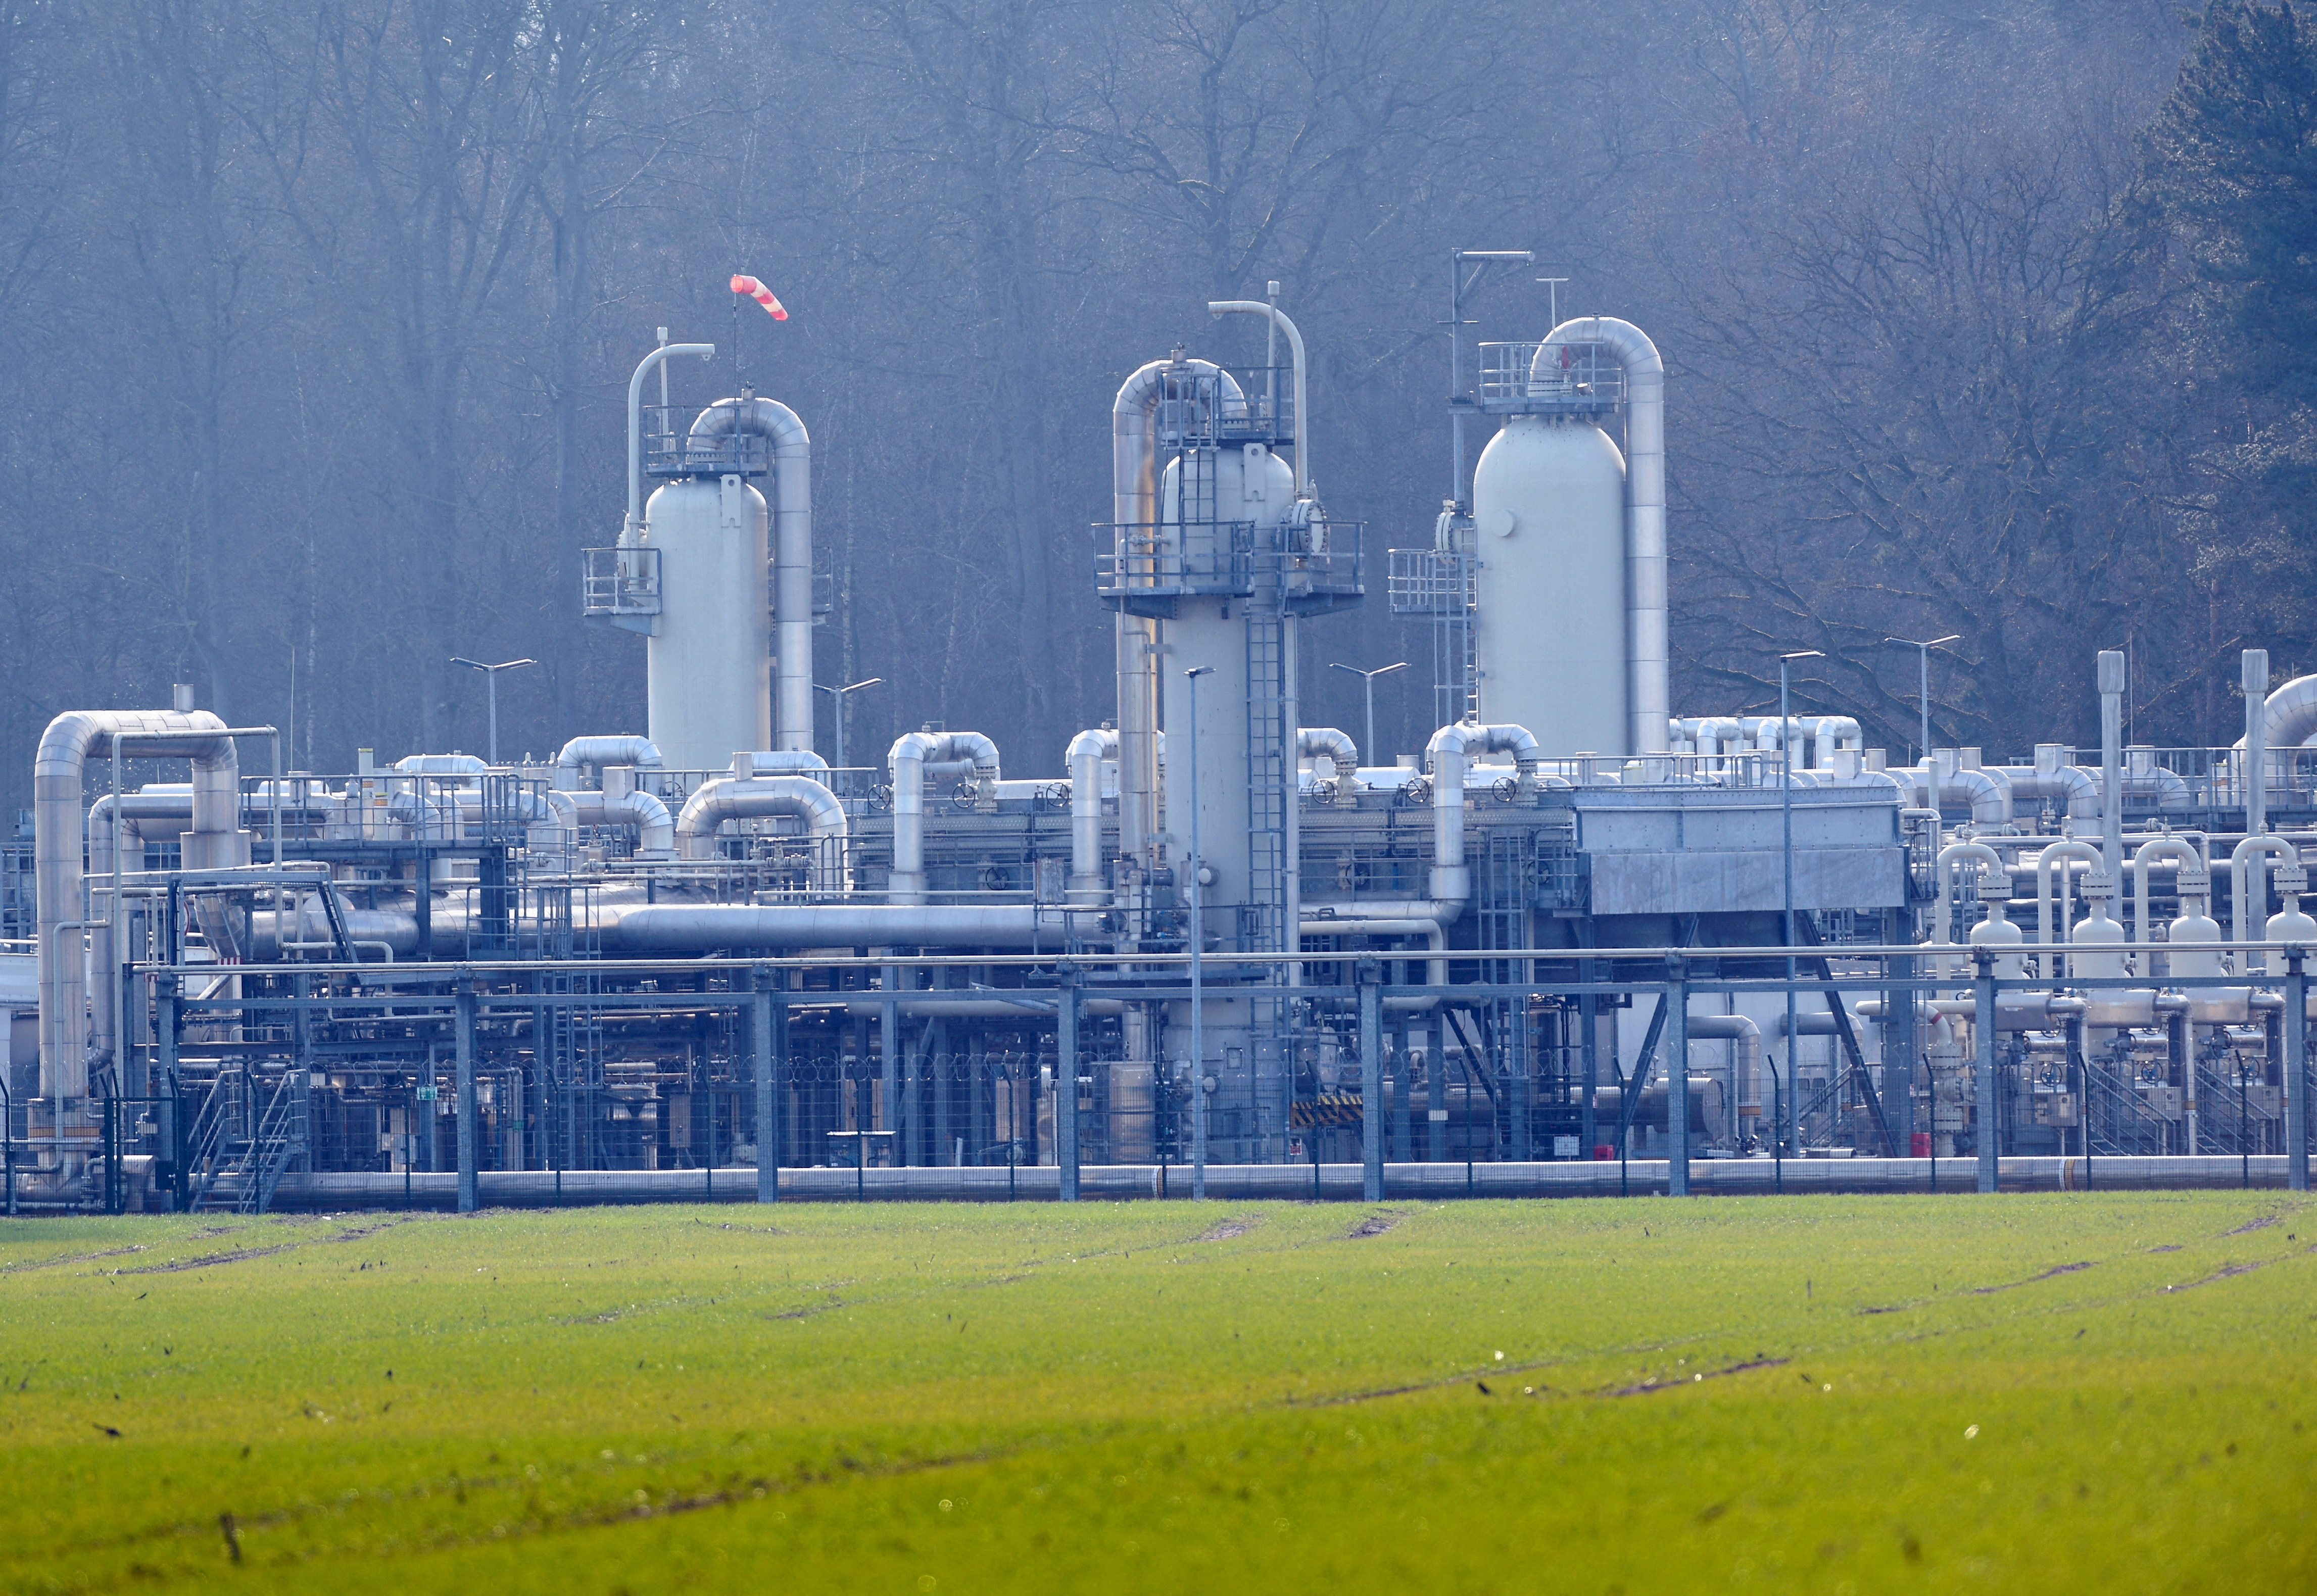 FOTO DE ARCHIVO: El depósito de gas natural de Astora, que es el mayor almacenamiento de gas natural de Europa Occidental, es fotografiado en Rehden, Alemania, el 16 de marzo de 2022. REUTERS/Fabian Bimmer